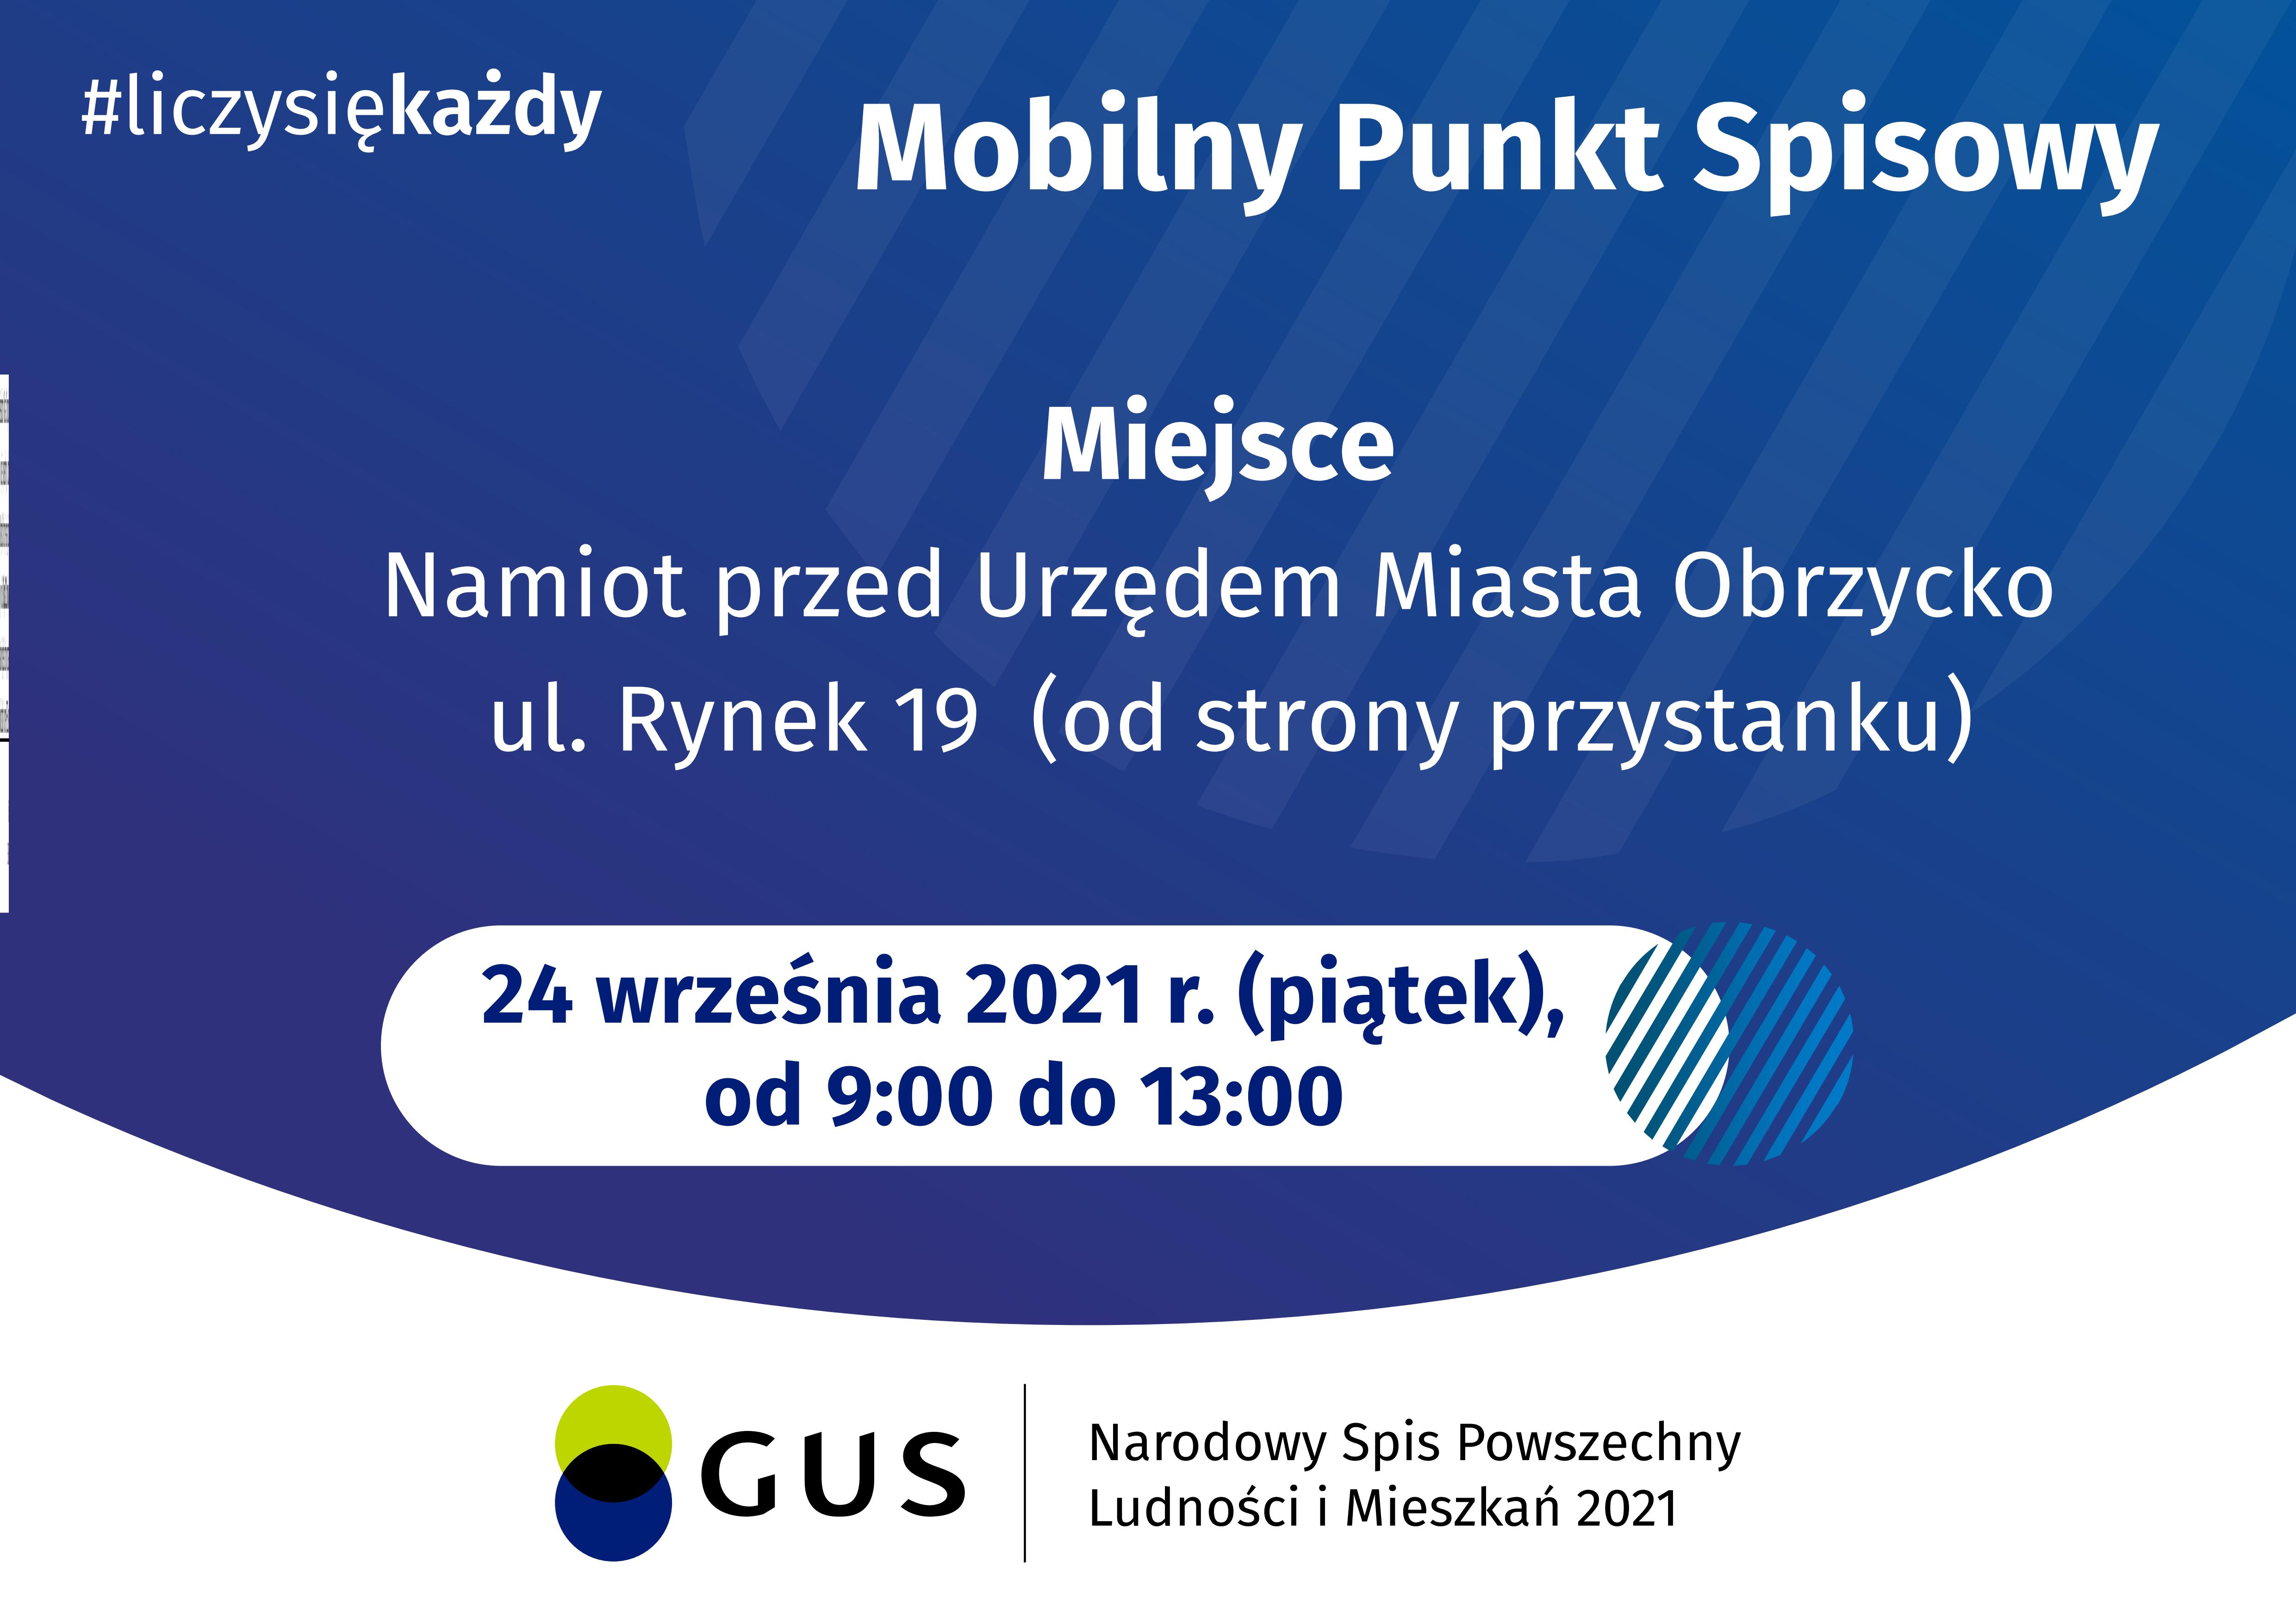    mobilny-punkt-spisowy-nsp2021.jpg